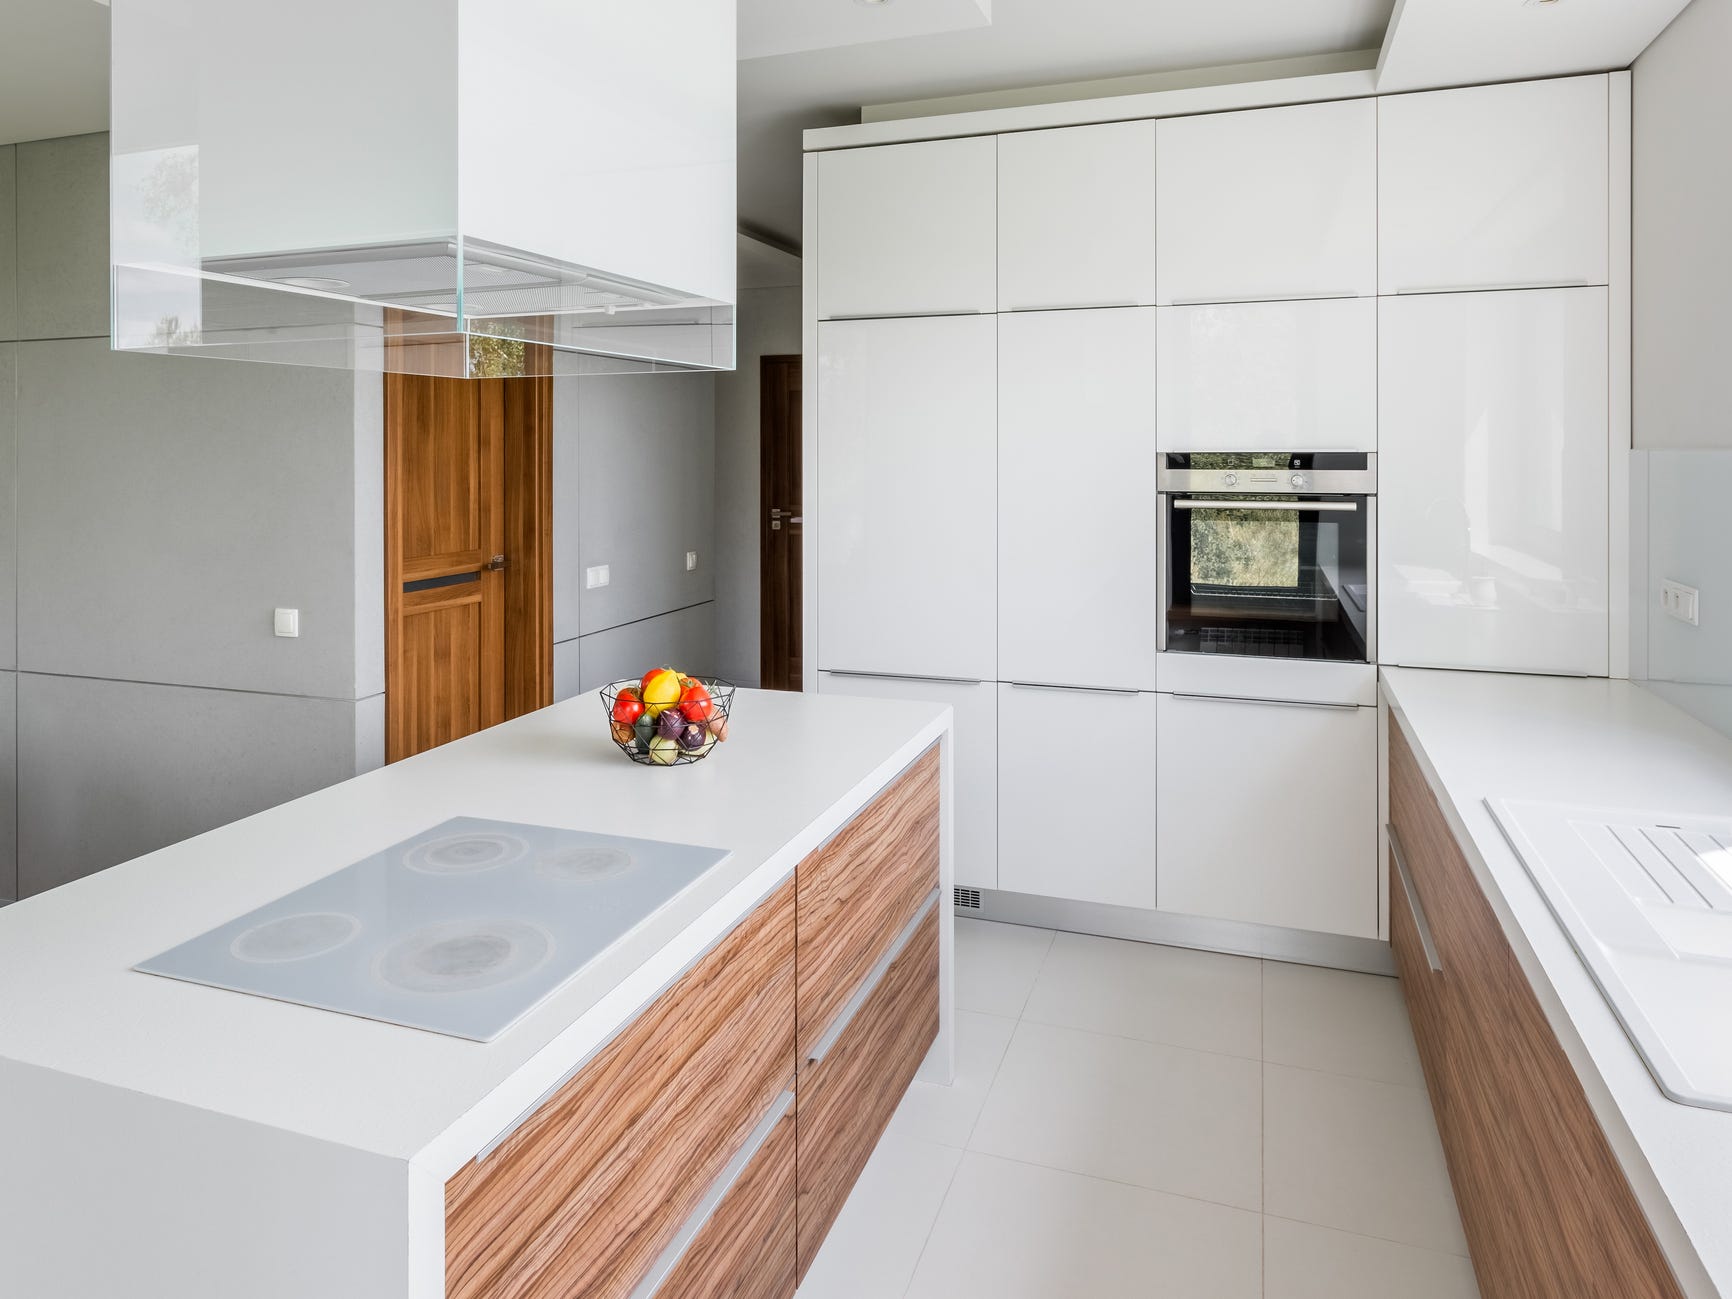 Eine größtenteils weiße Küche mit einigen Holzdetails auf den Arbeitsflächen.  Über einer Kücheninsel hängt eine große rechteckige weiße Leuchte